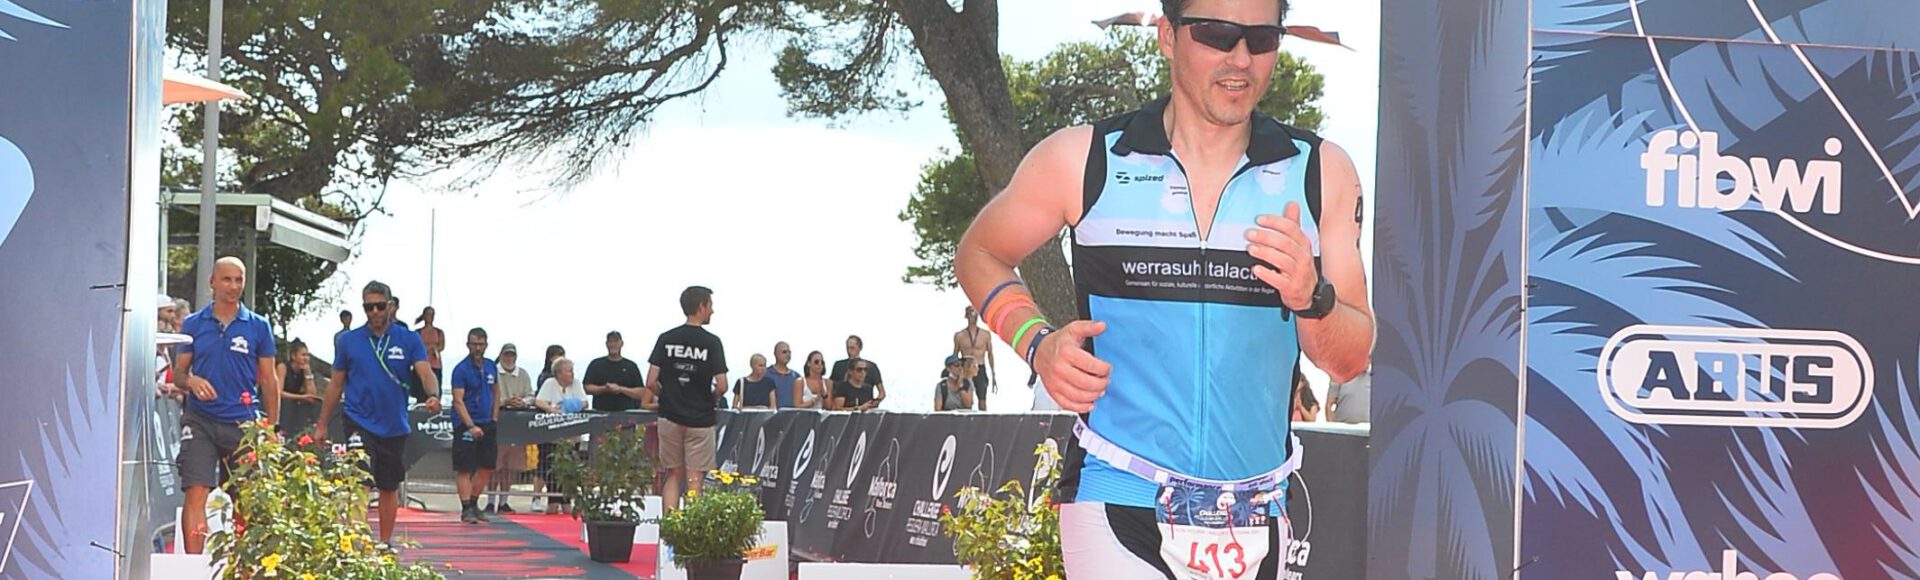 René Steinhäuser finisht Mitteldistanz auf Mallorca